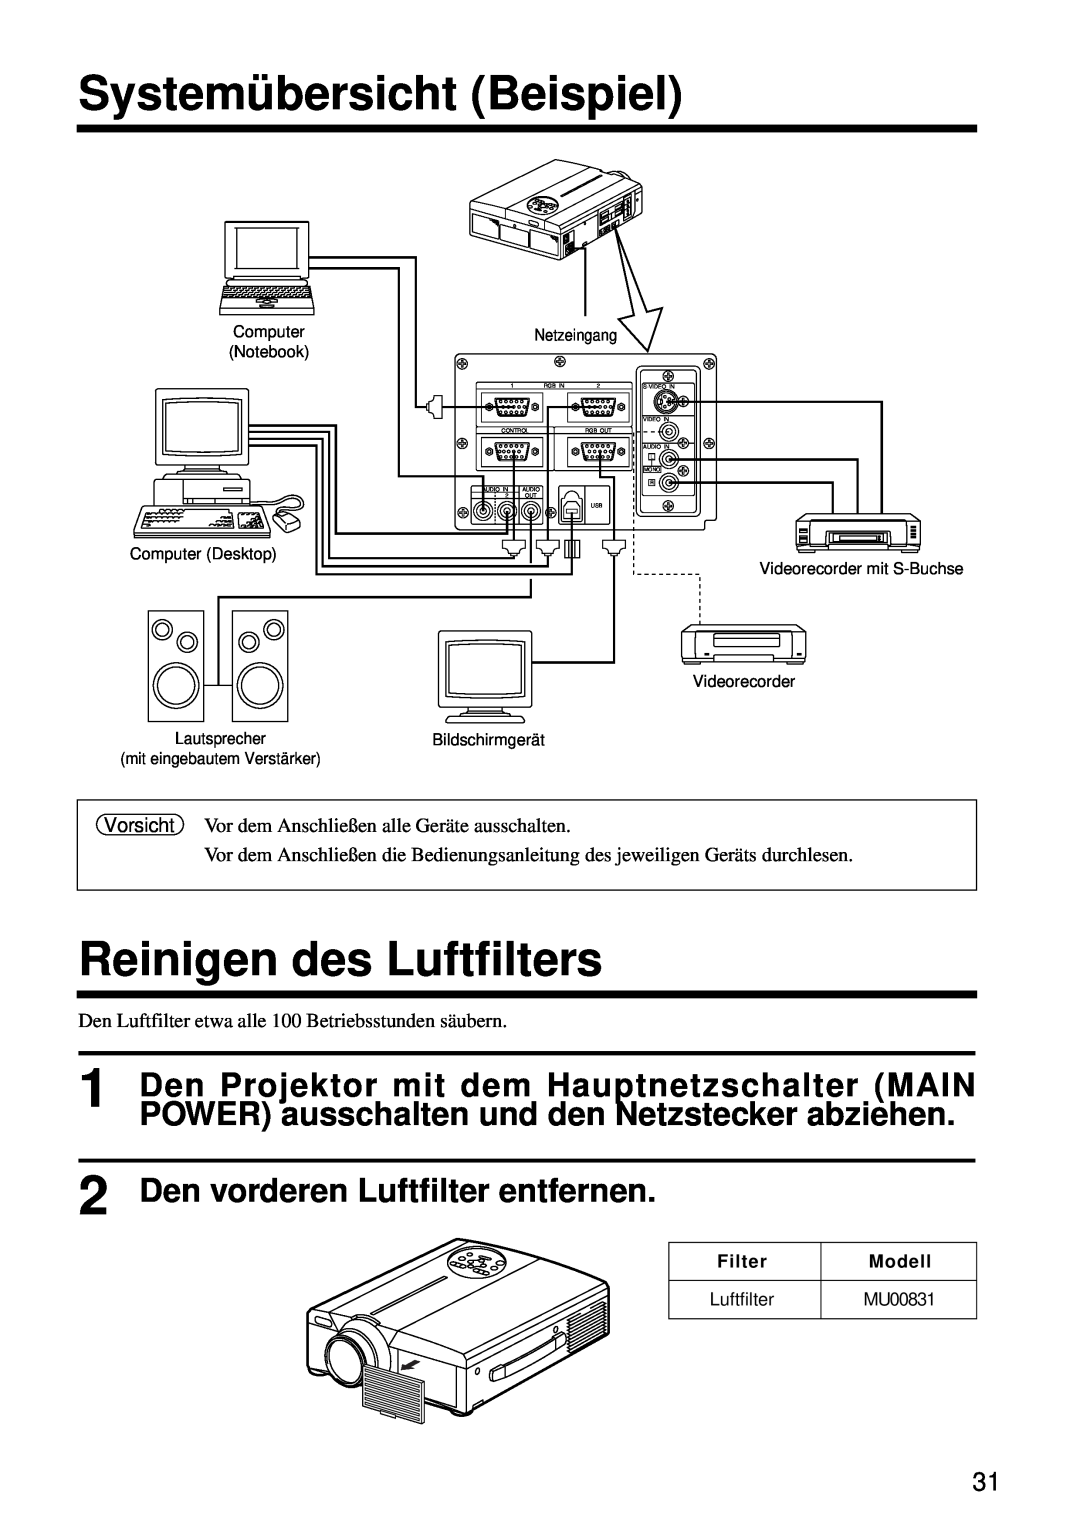 Hitachi CP-S860W user manual Systemübersicht Beispiel, Reinigen des Luftfilters, Den vorderen Luftfilter entfernen 